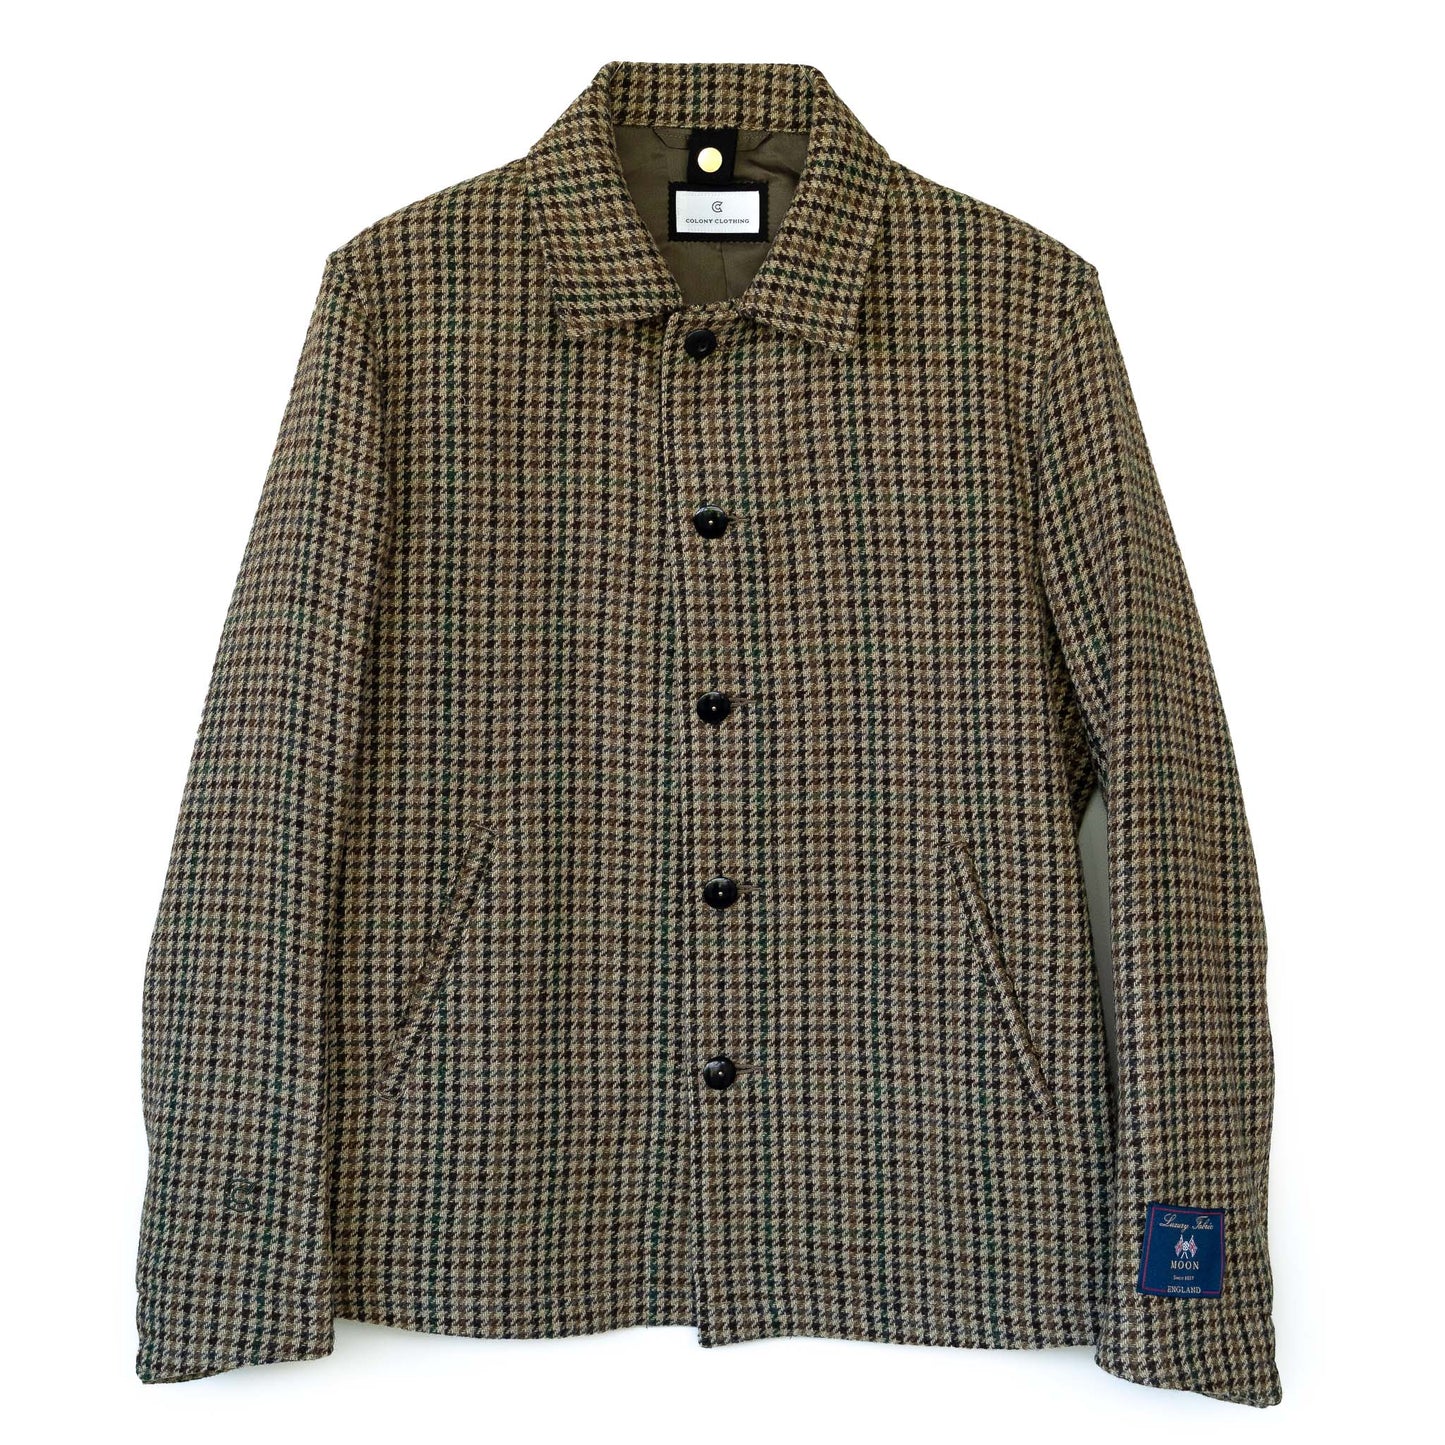 COLONY CLOTHING / MOON ガンクラブチェック フィールドジャケット / CC2202-JK05-4